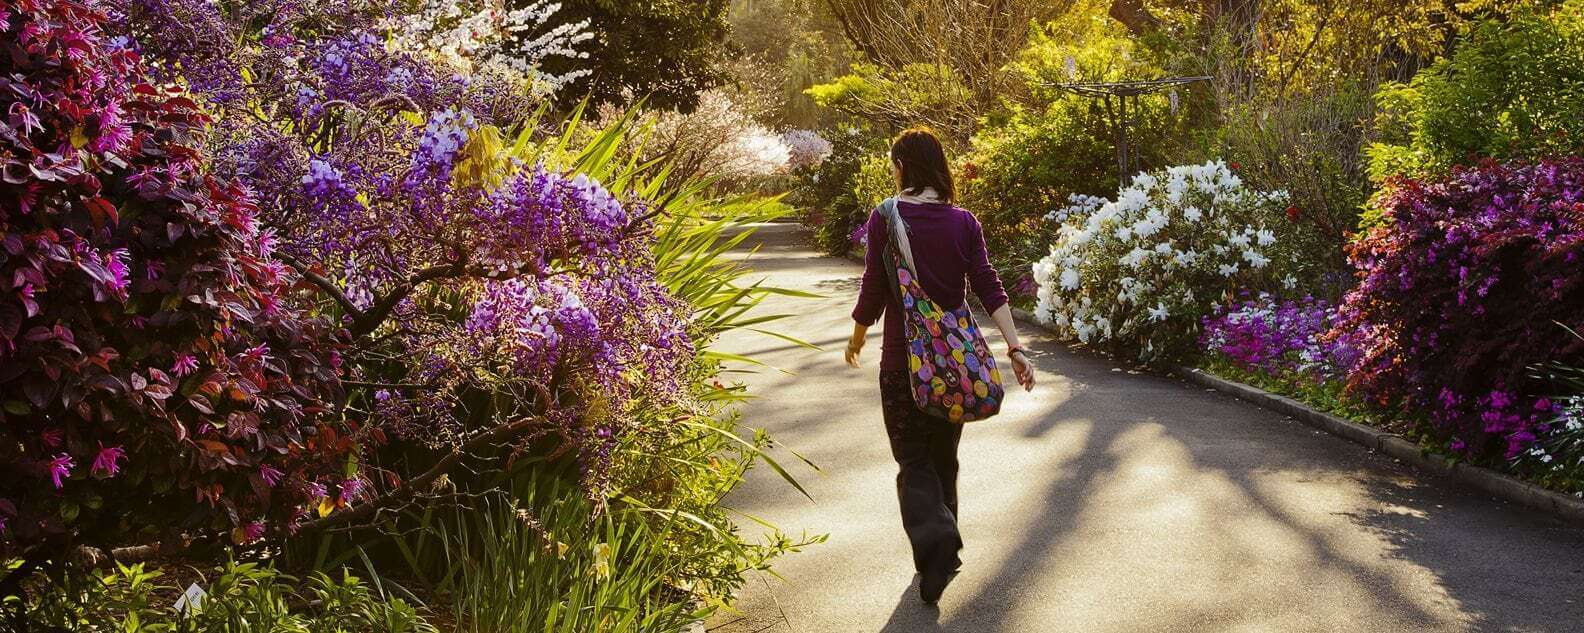 walking along garden pathway